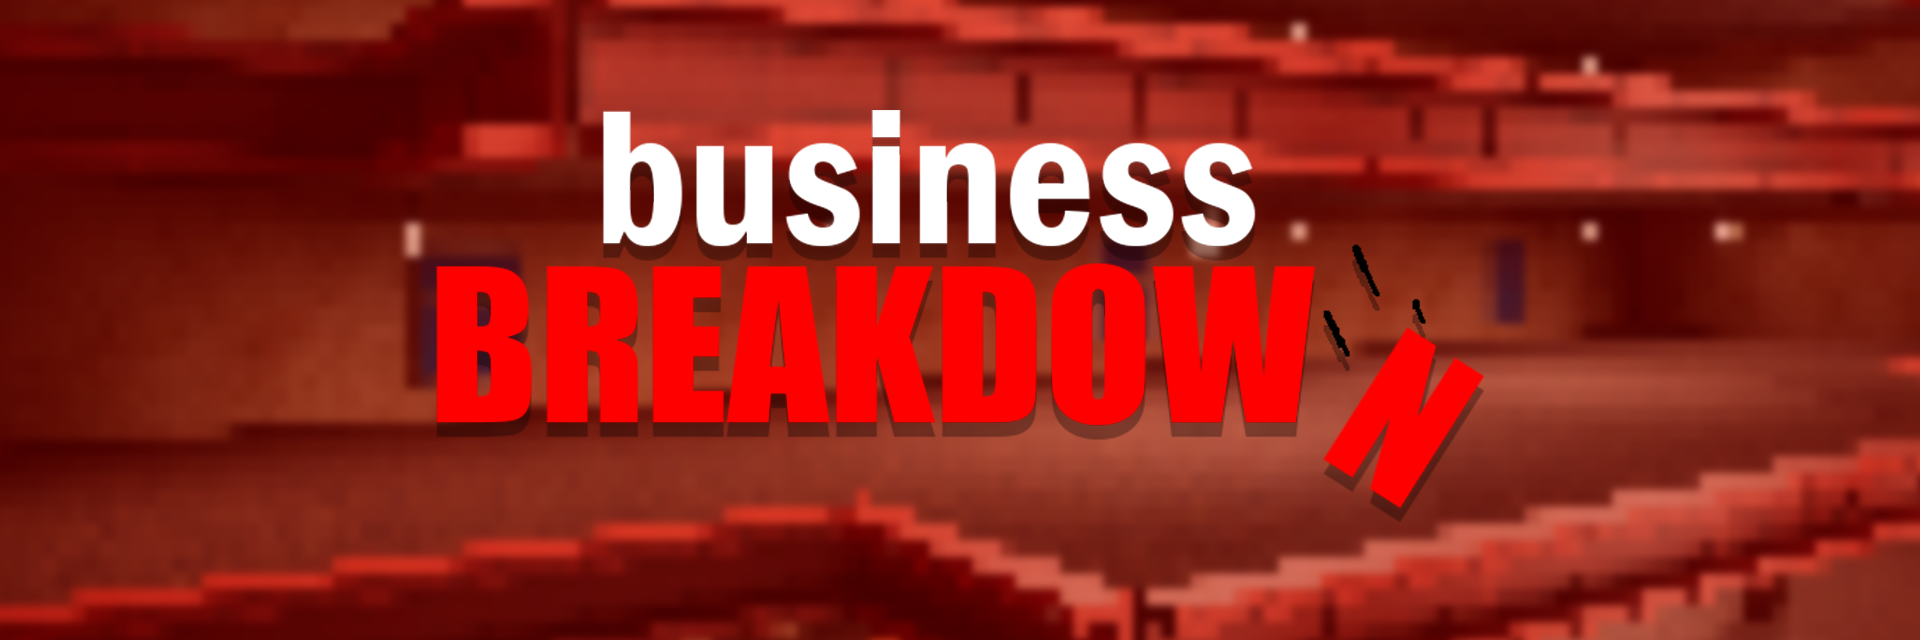 Business BREAKDOWN - Bearducks